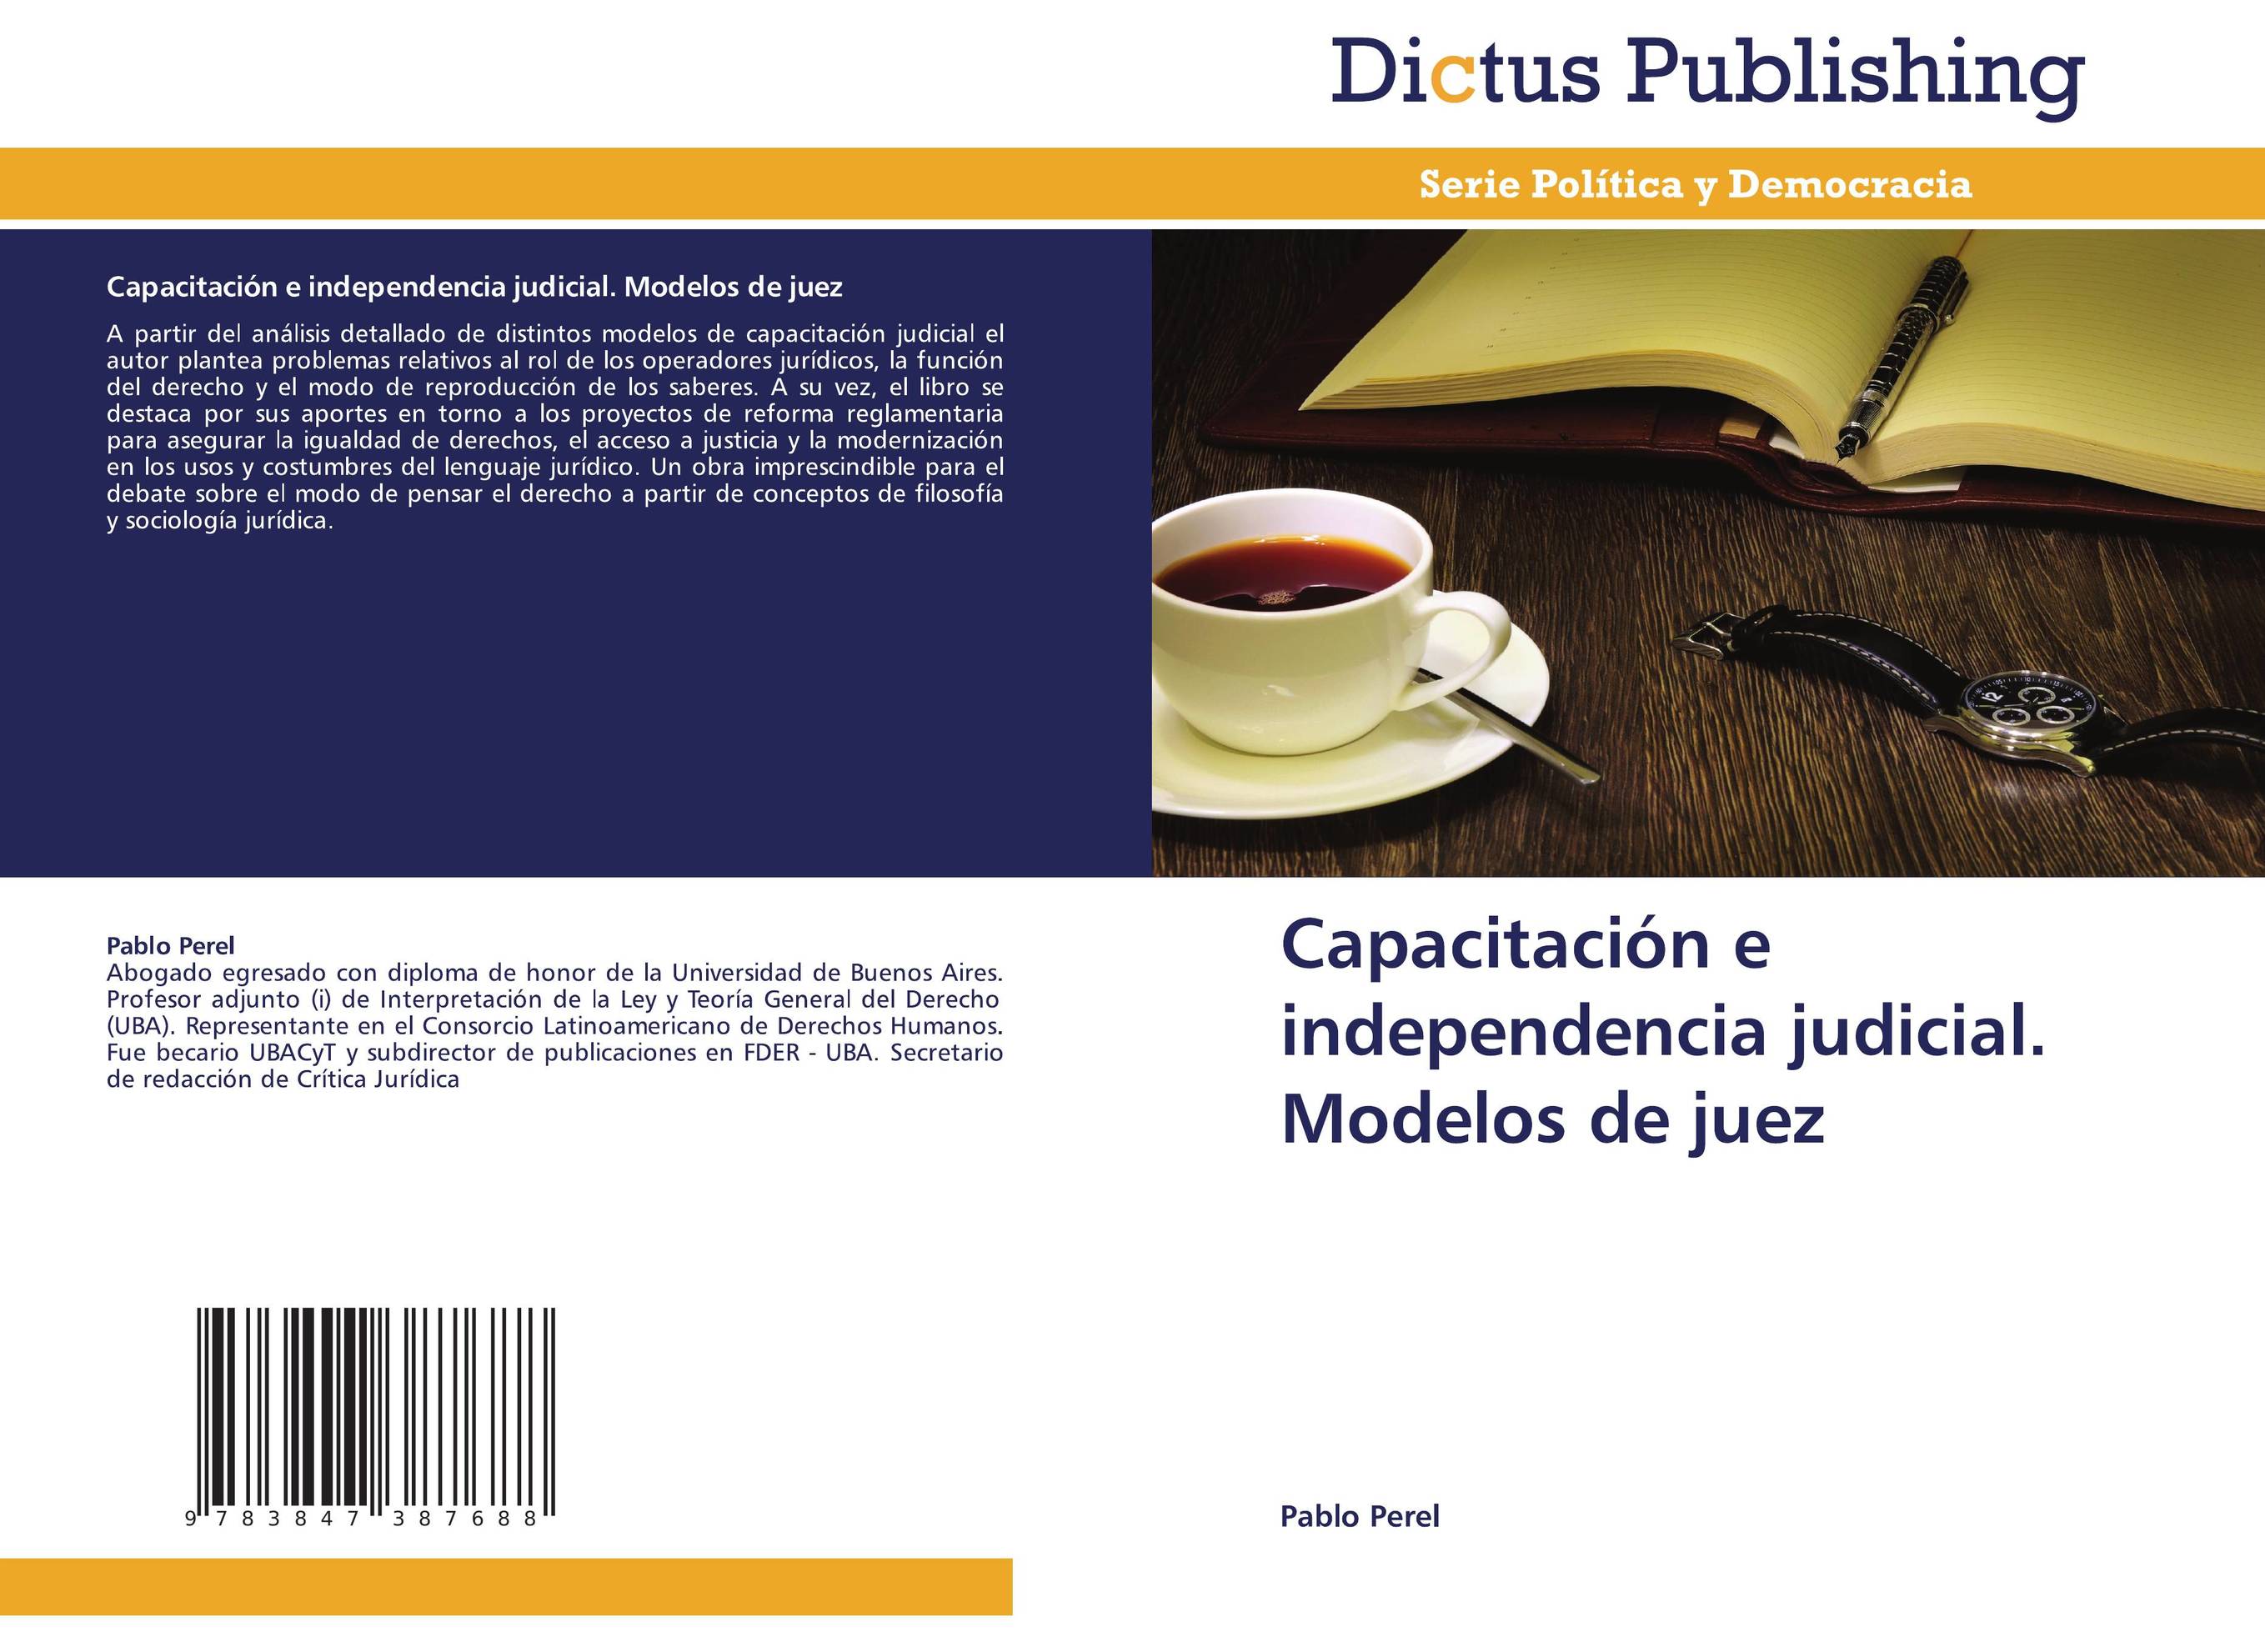 Capacitación e independencia judicial. Modelos de juez